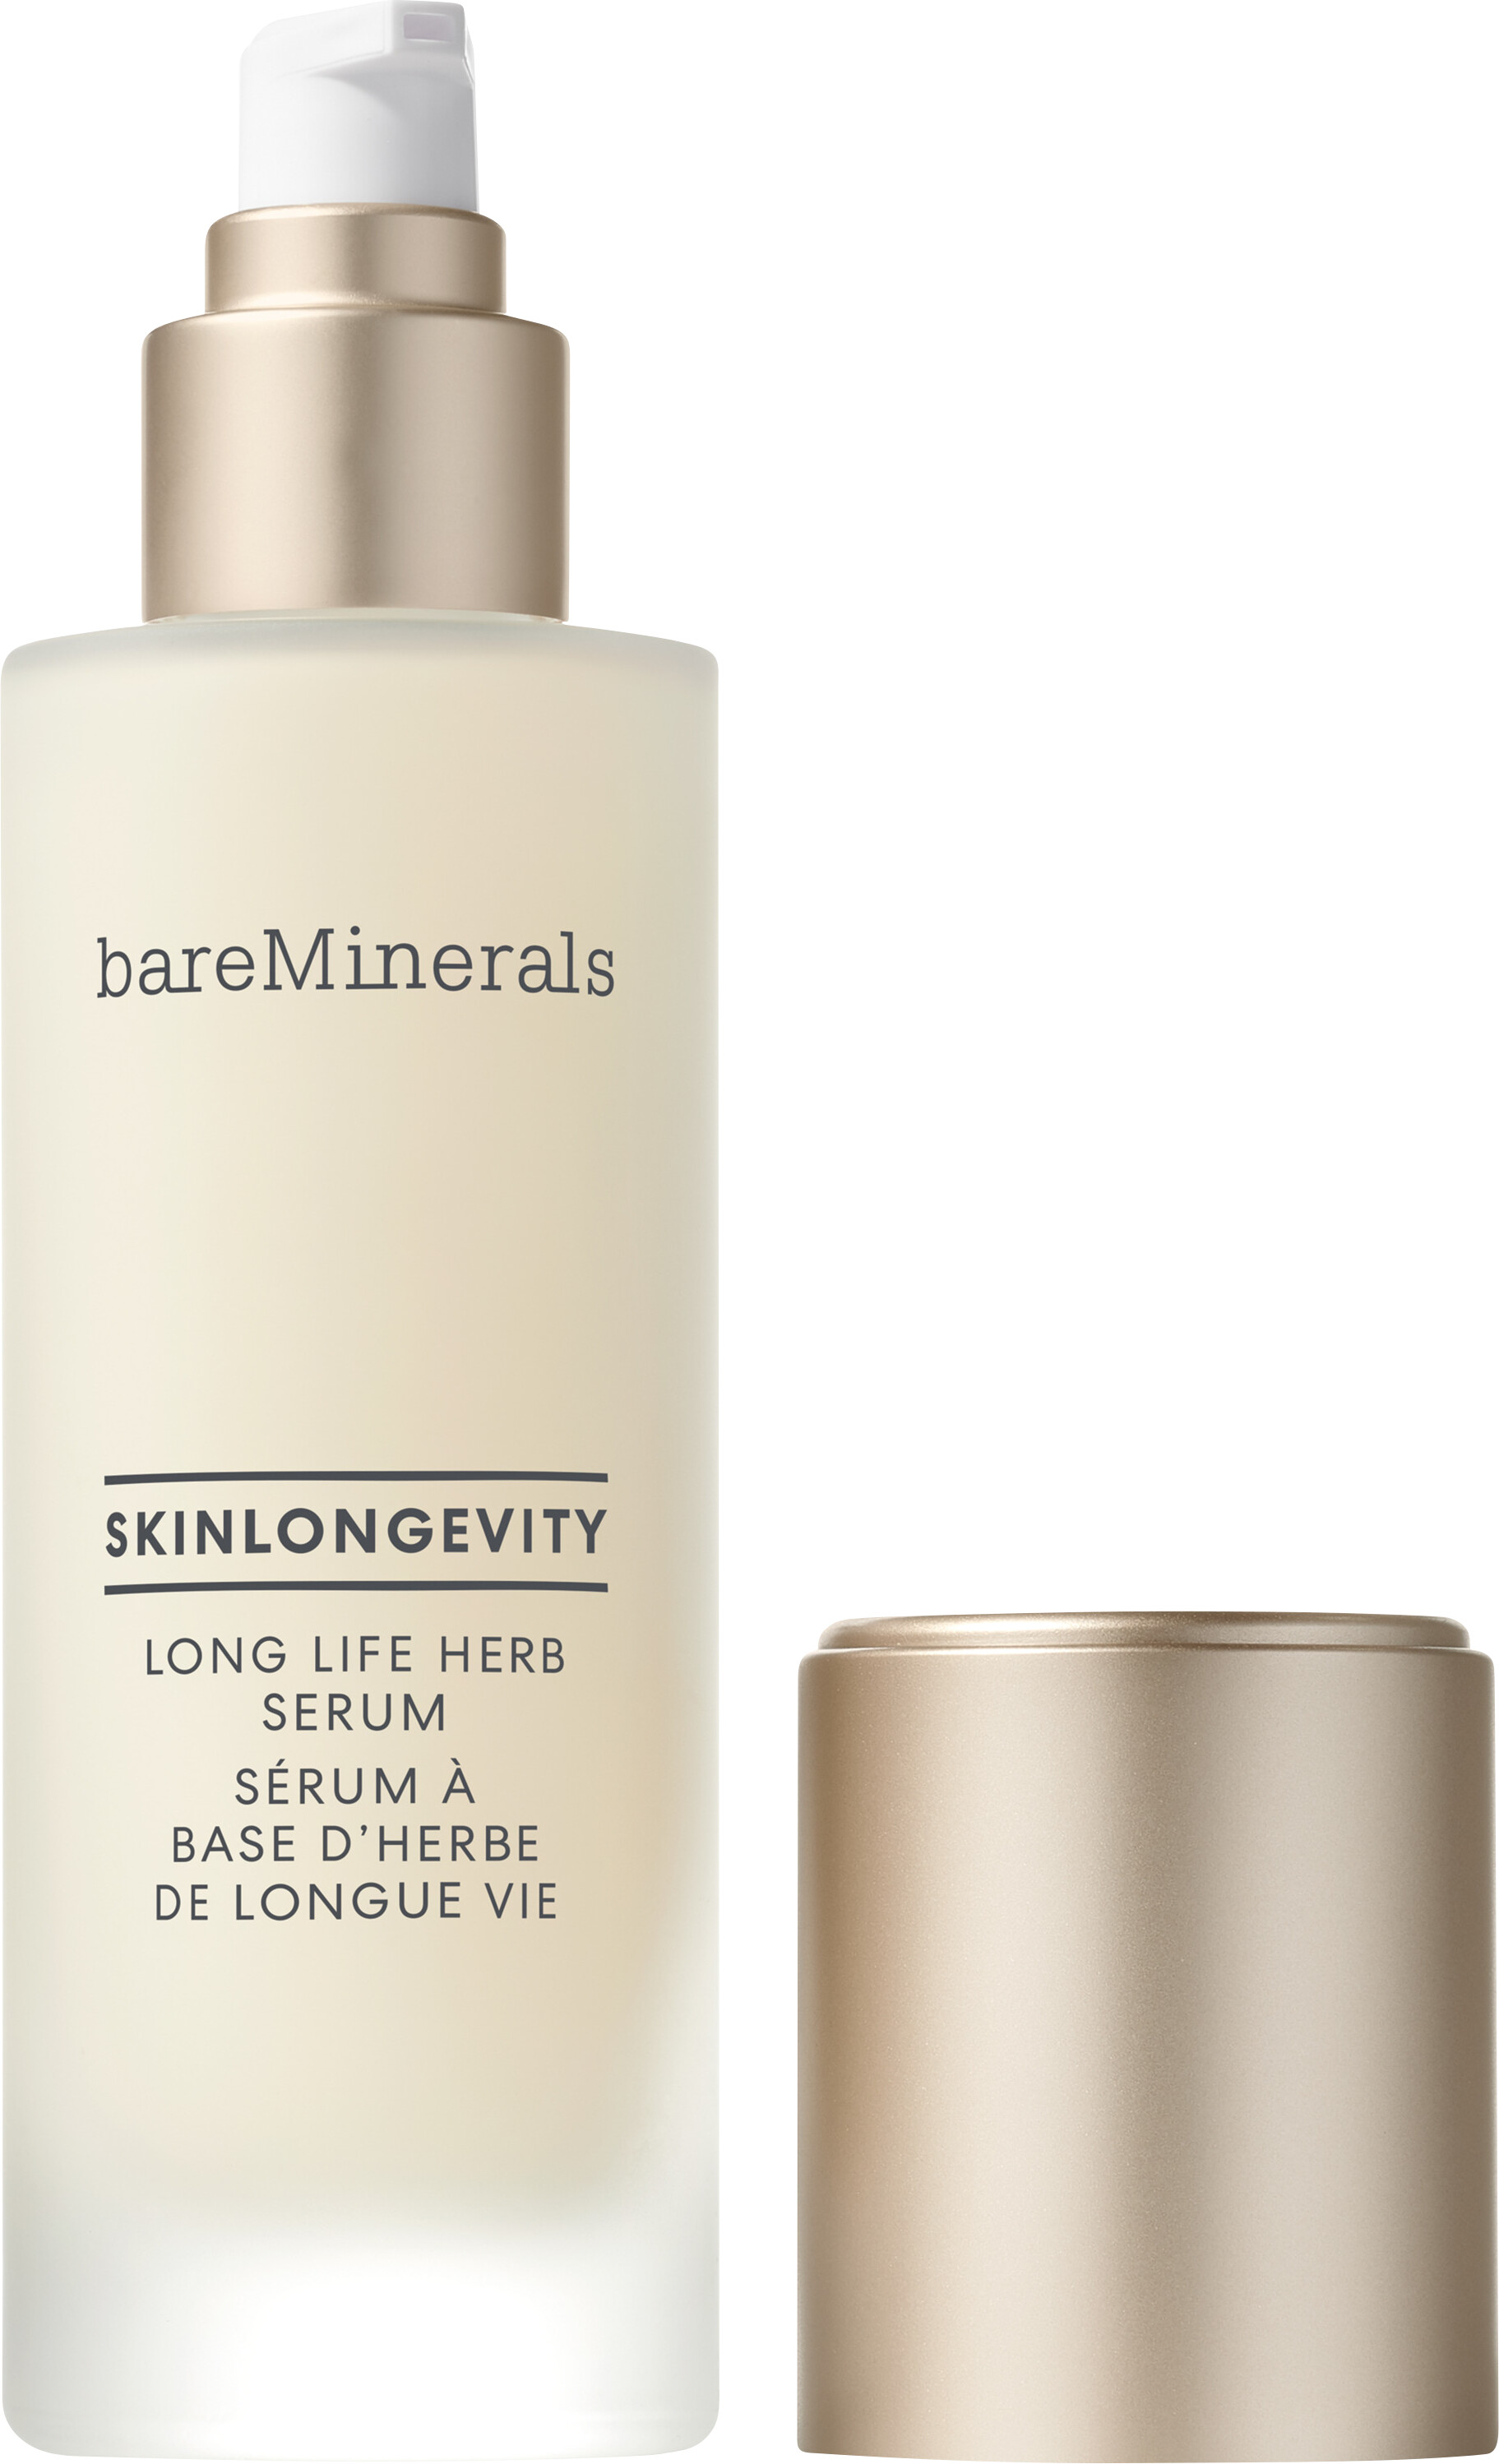 bareMinerals SkinLongevity Long Life Herb Serum 100ml